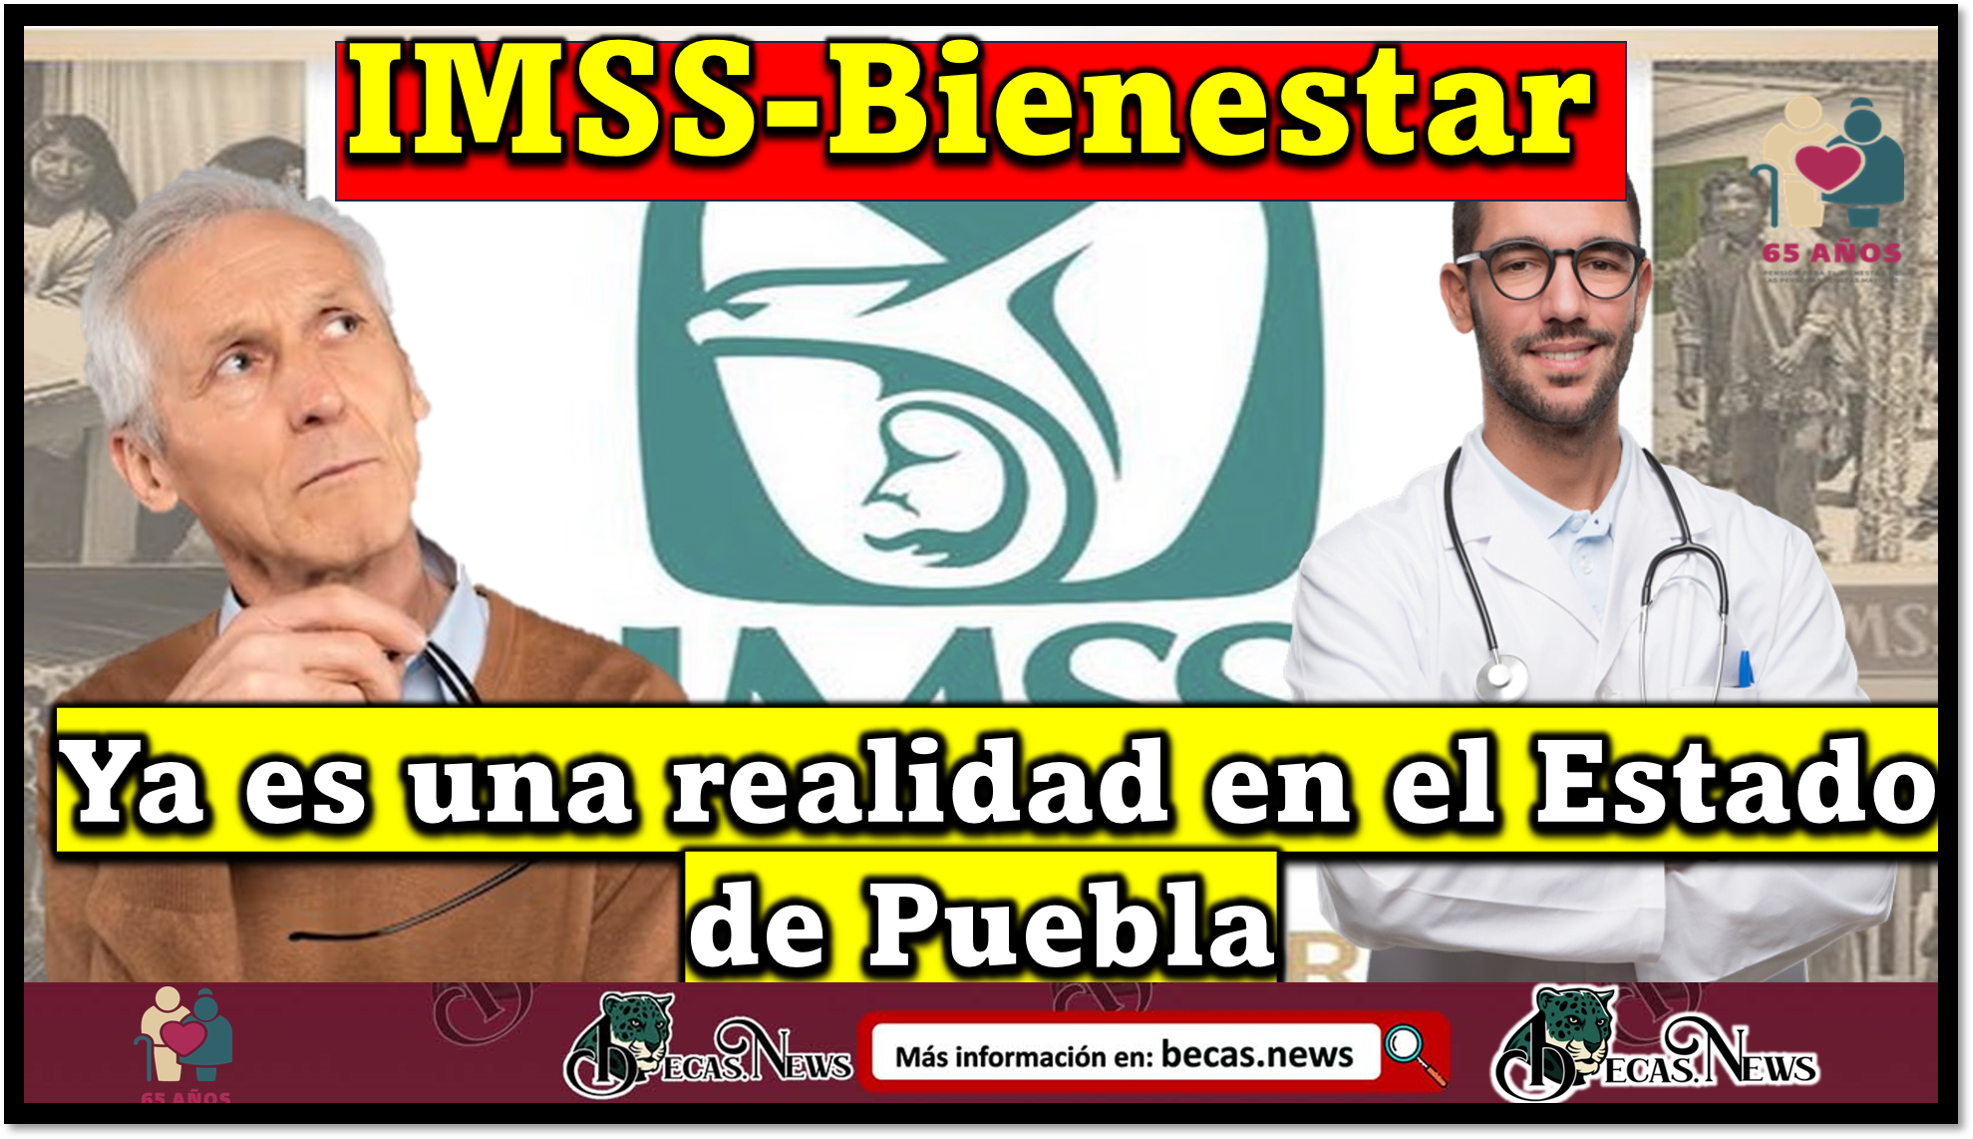 Ya es una realidad en el Estado de Puebla el IMSS-Bienestar